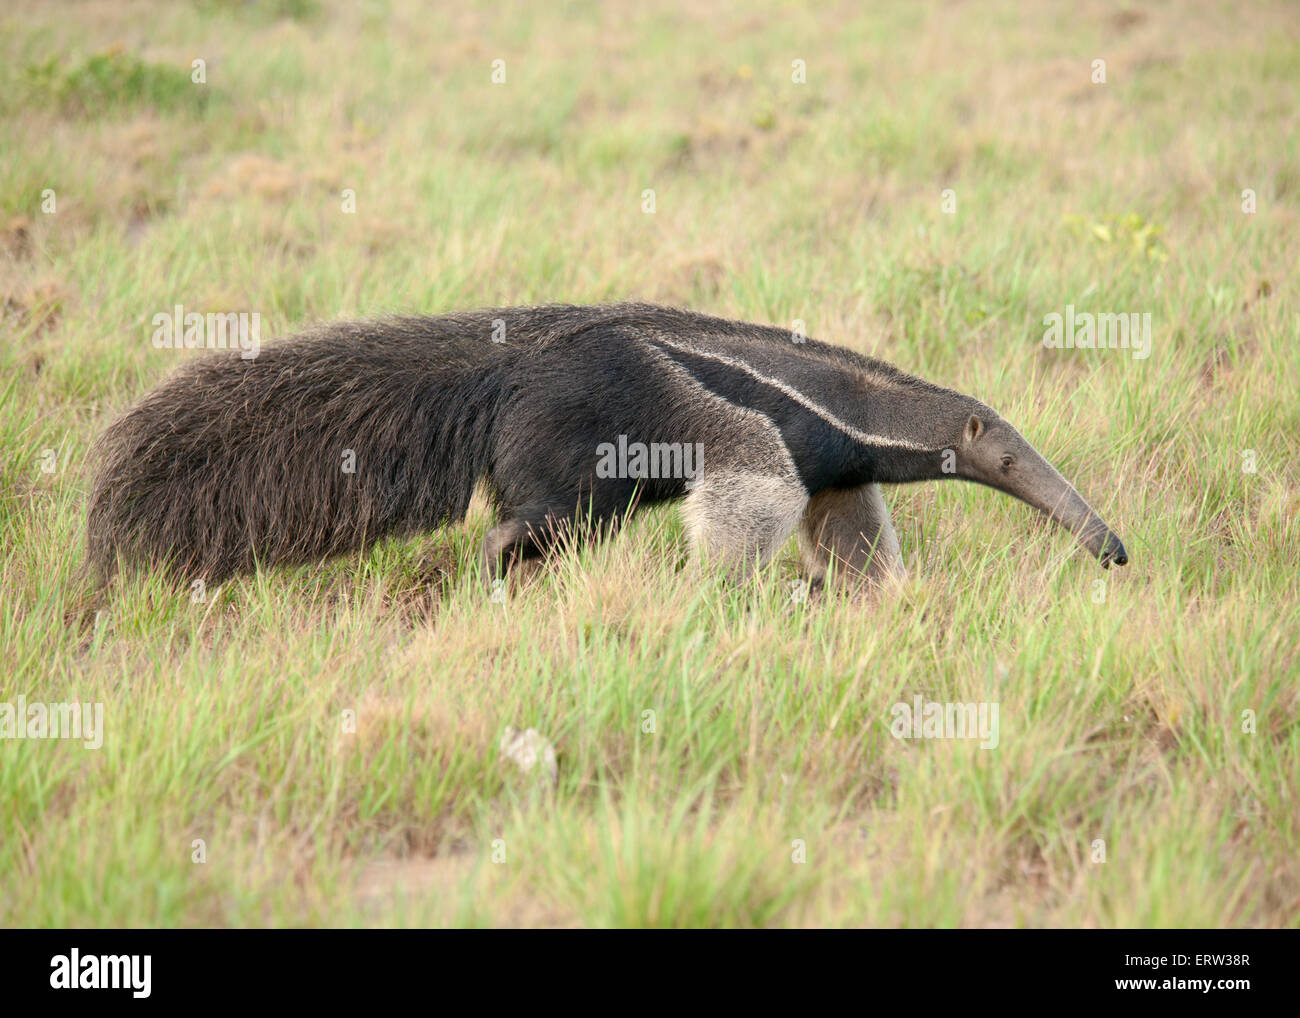 Oso hormiguero gigante en Guyana Foto de stock